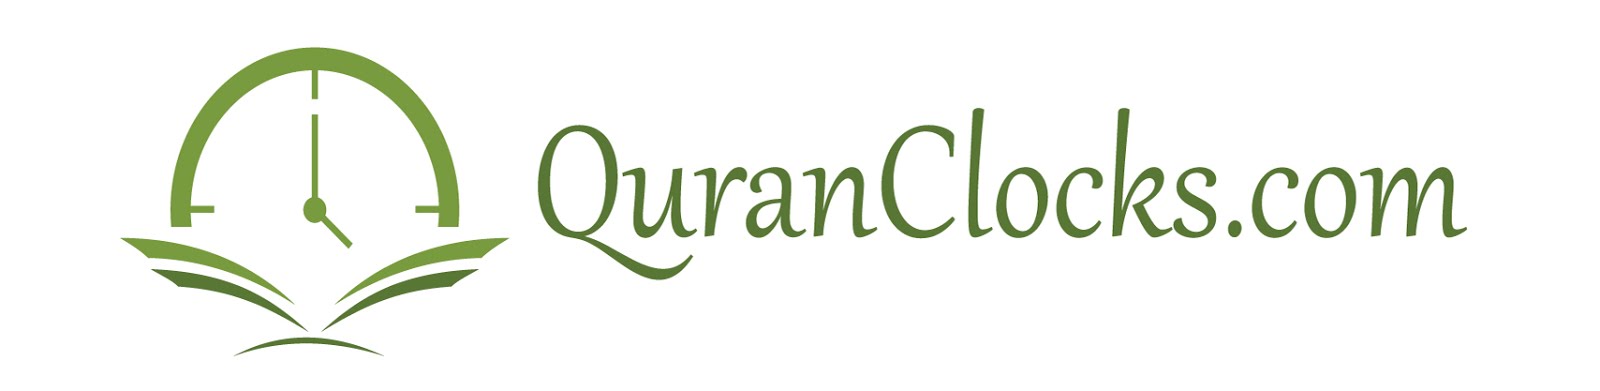 QuranClocks.com